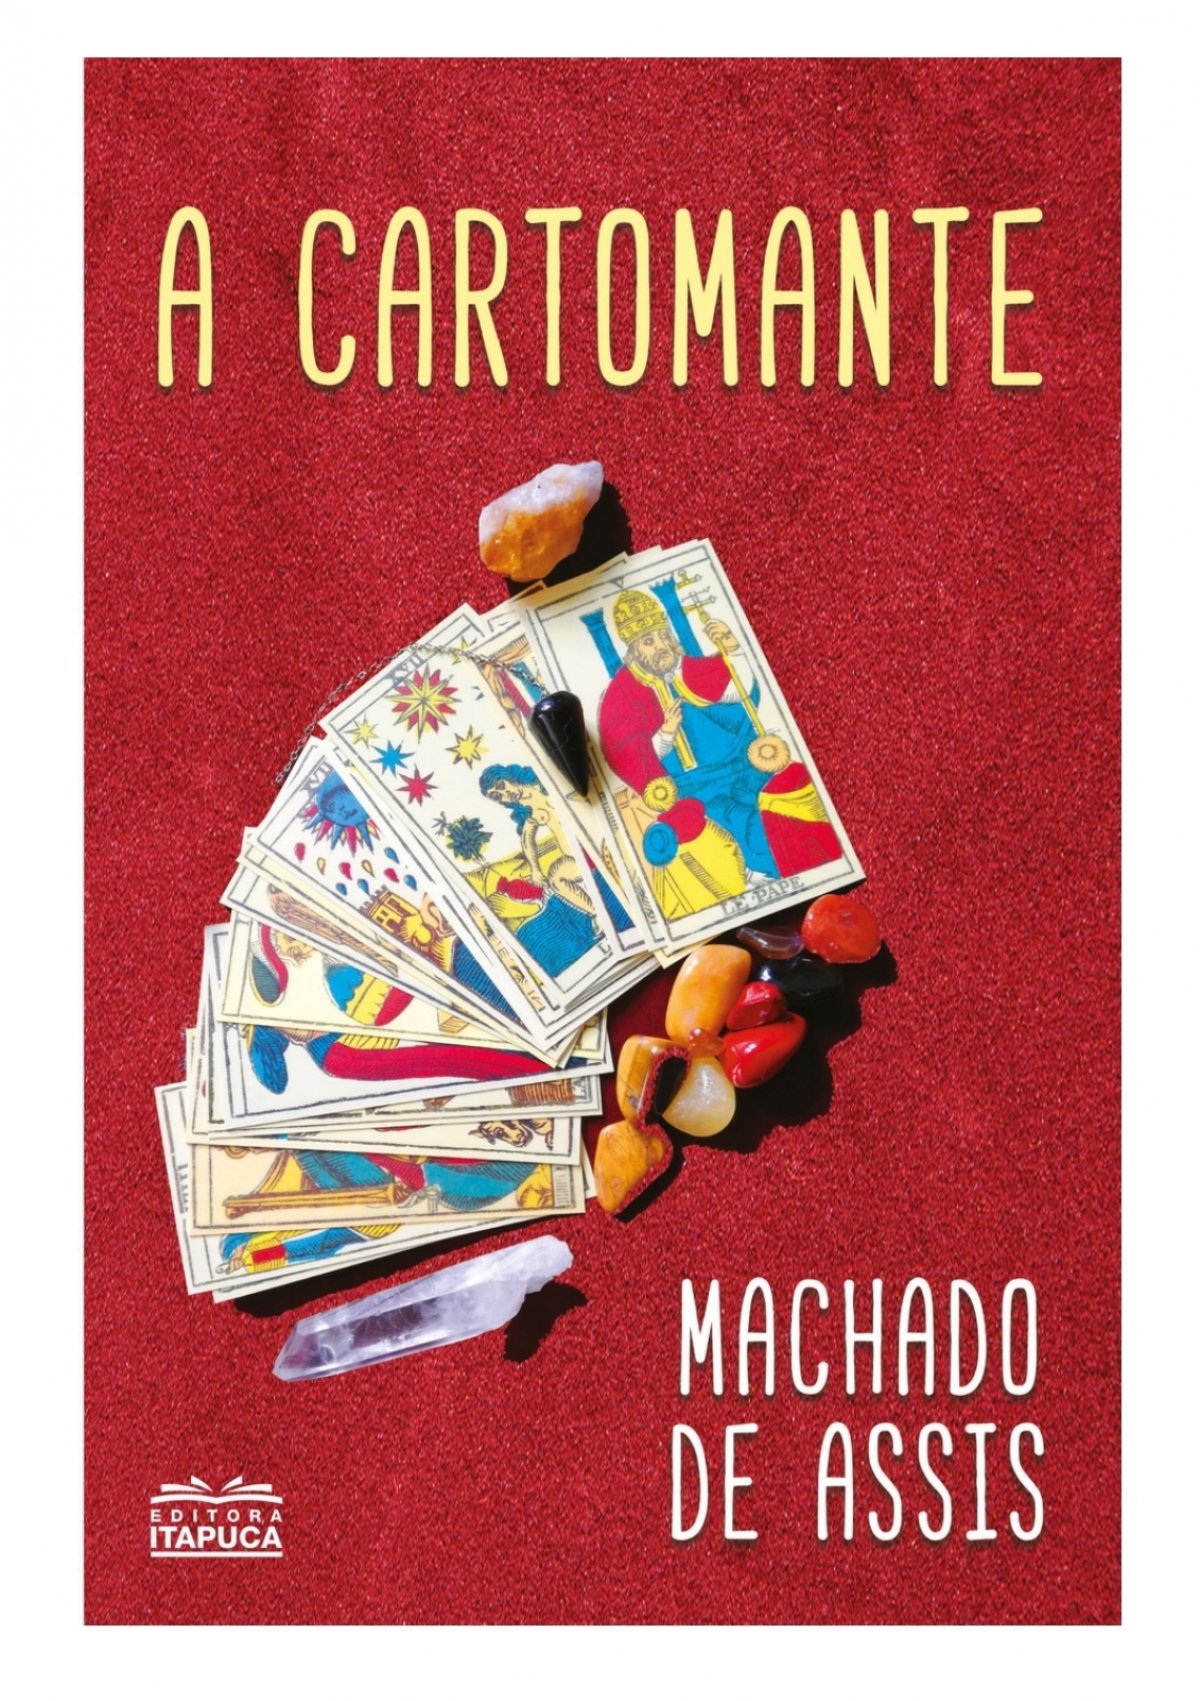 DOWNLOAD Free PDF A Cartomante BY Machado de Assis